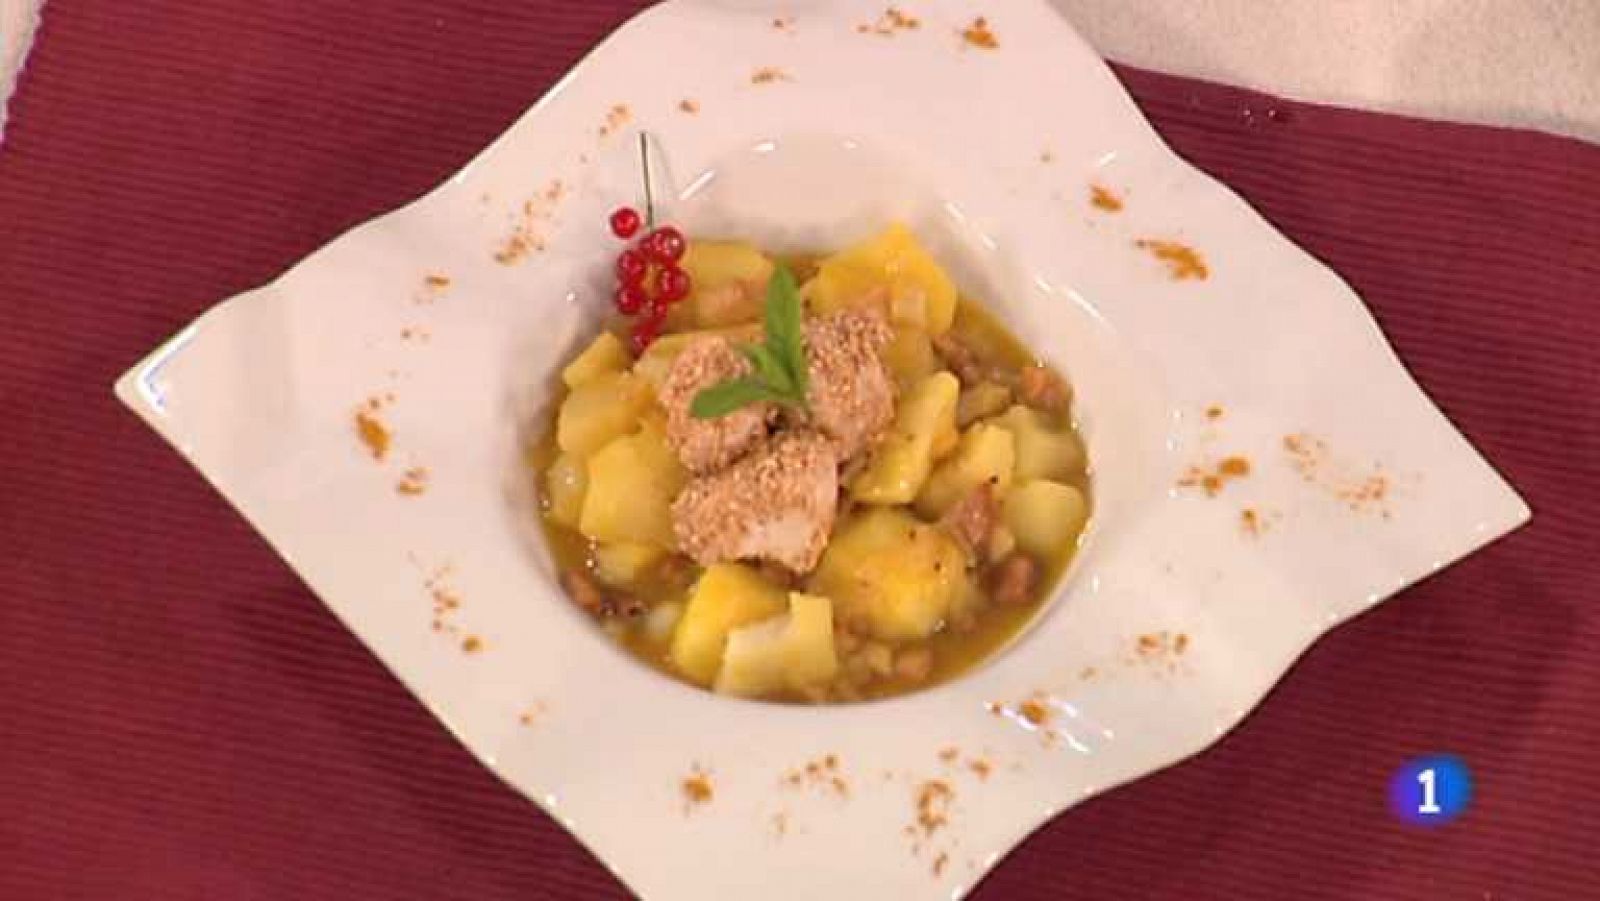 Cocina con Sergio - Patatas al curry con pollo - Ver ahora